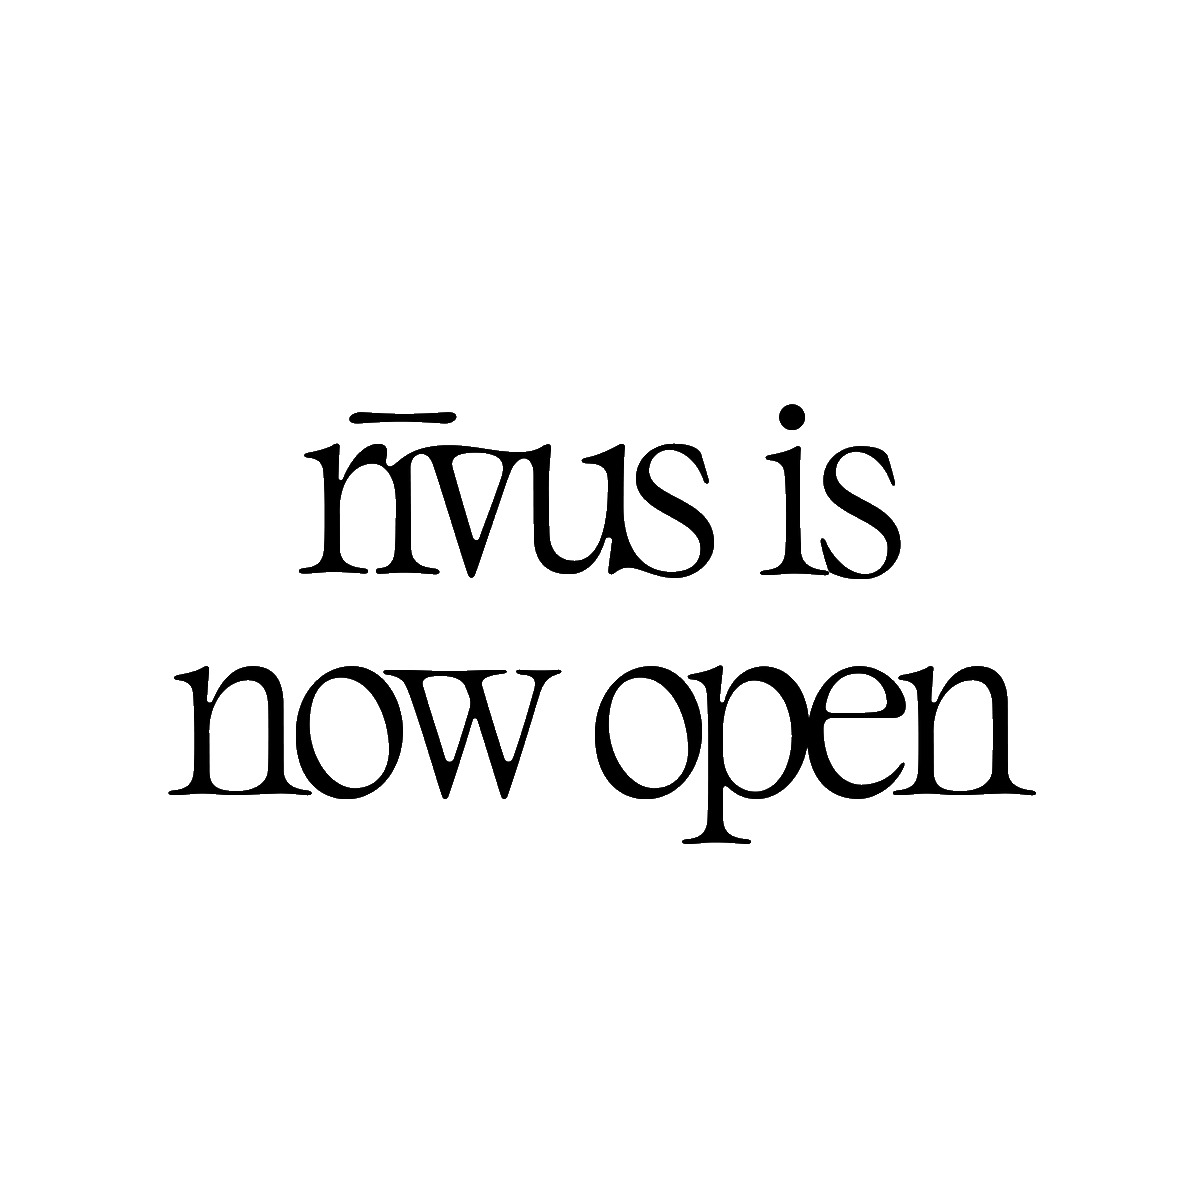 rīvus is now open!

12 March - 13 June 2022 | Entry is free

bit.ly/2LsbmvD

#BiennaleOfSydney #rivus #Biennale #Sydney #feelnewsydney